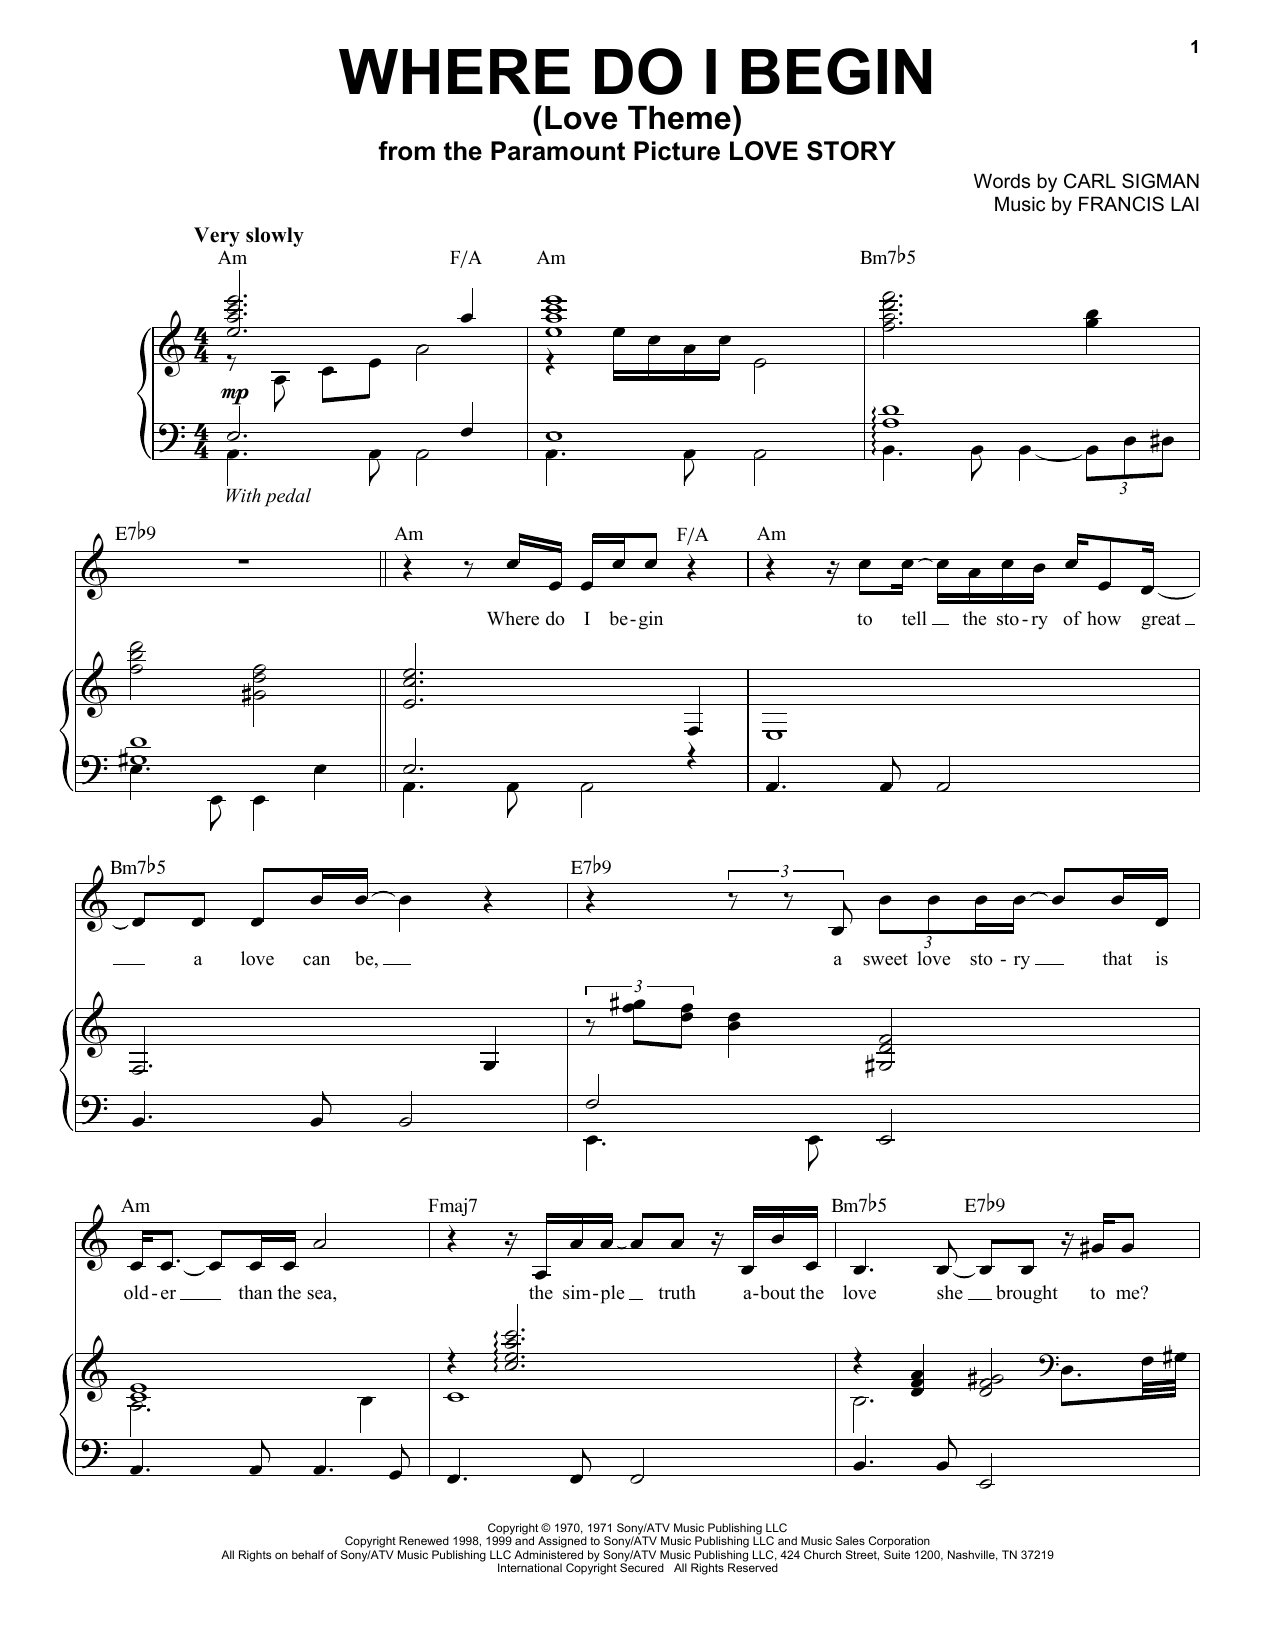 Download Tony Bennett Where Do I Begin (Love Theme) Sheet Music